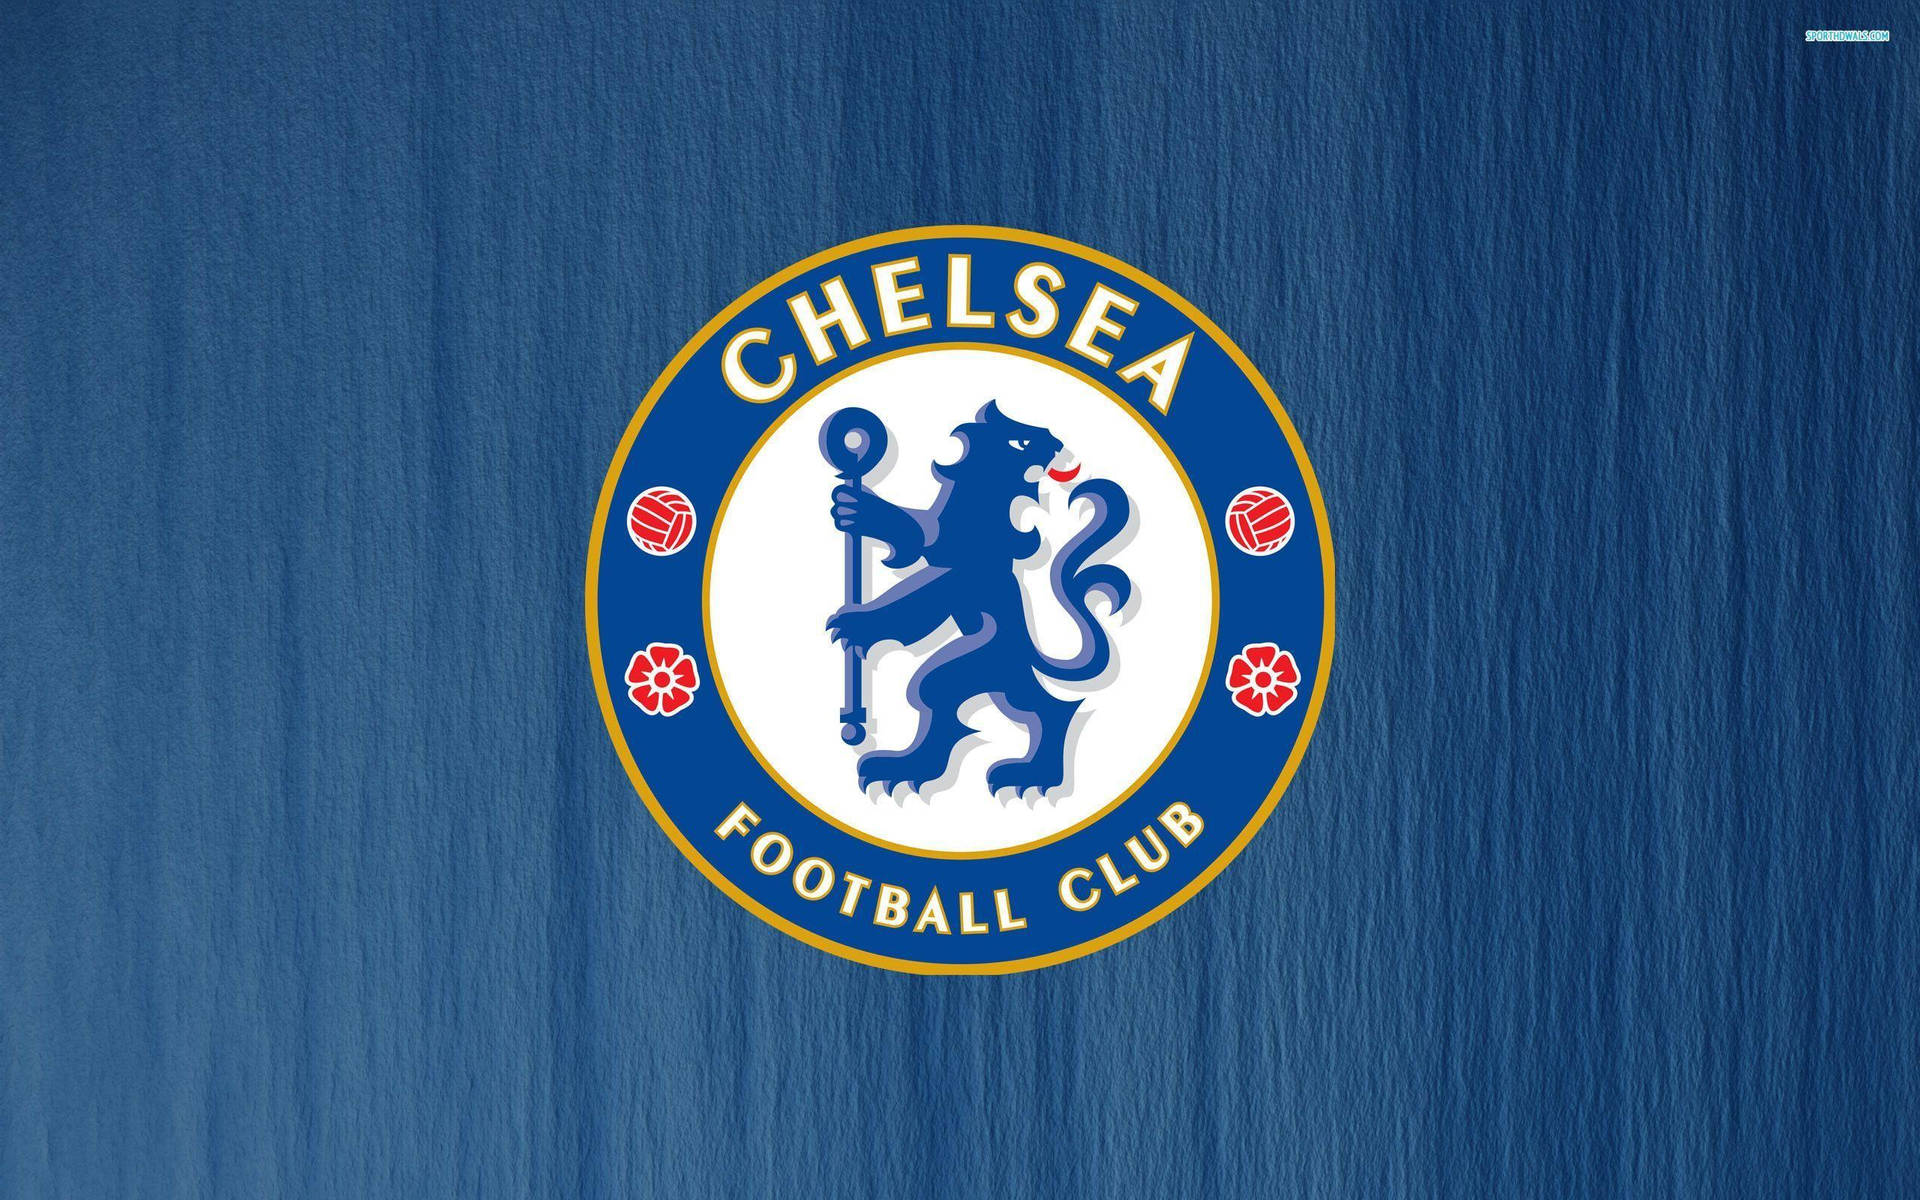 Chelseafc Logo Auf Blauem Hintergrund. Wallpaper